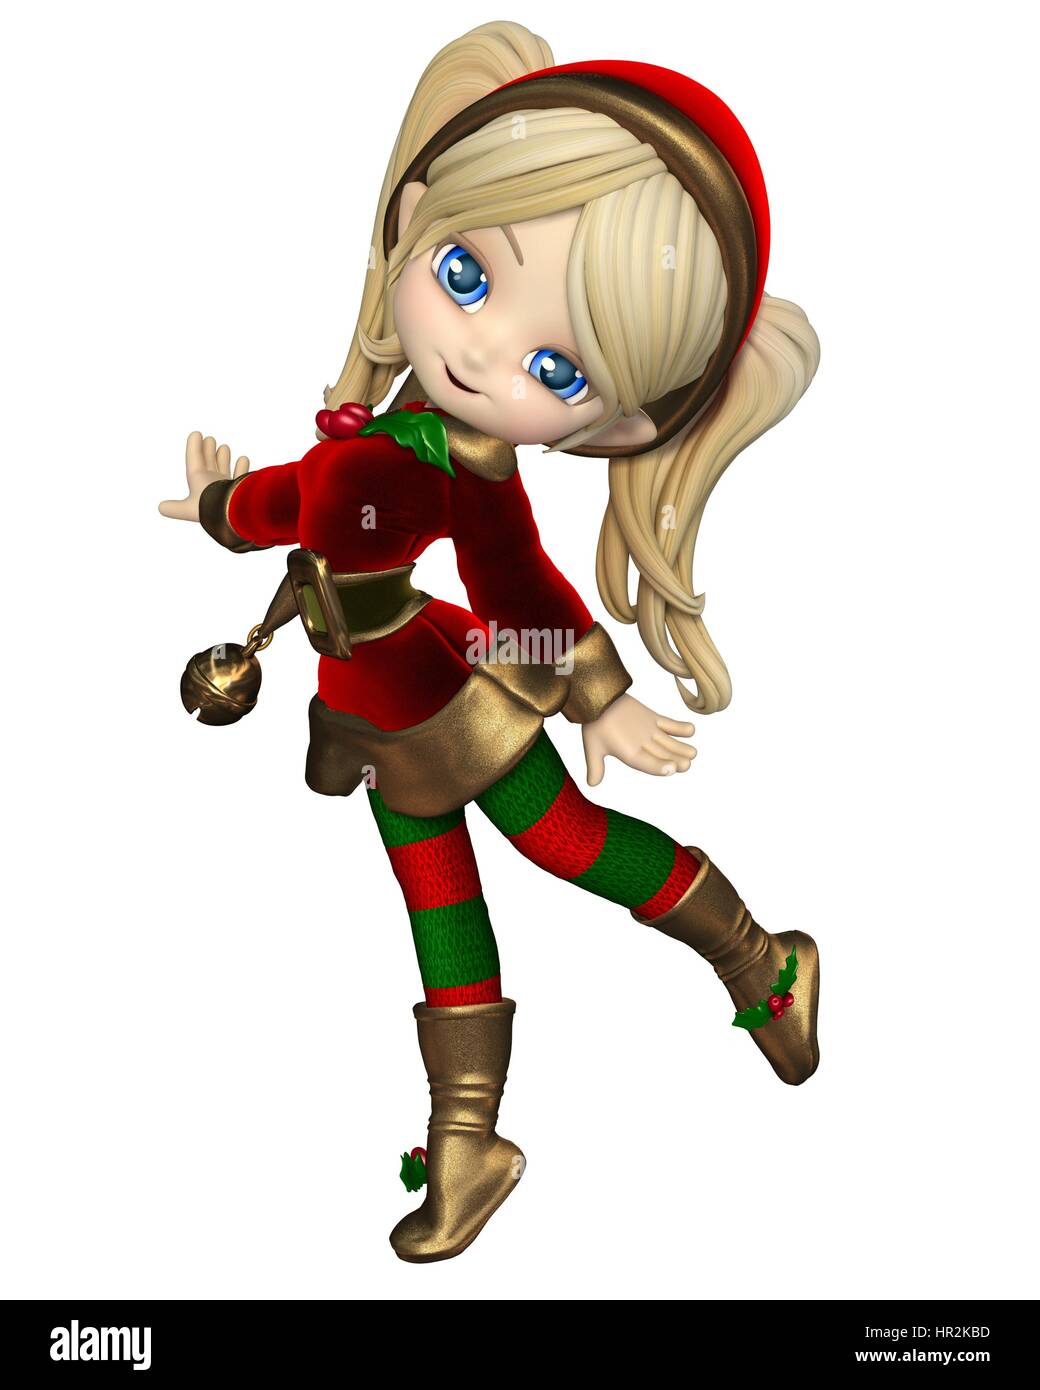 Toon mignon lutin de Noël fille dans un costume vert et rouge et un chapeau avec bell, rendu 3d illustration numérique Banque D'Images